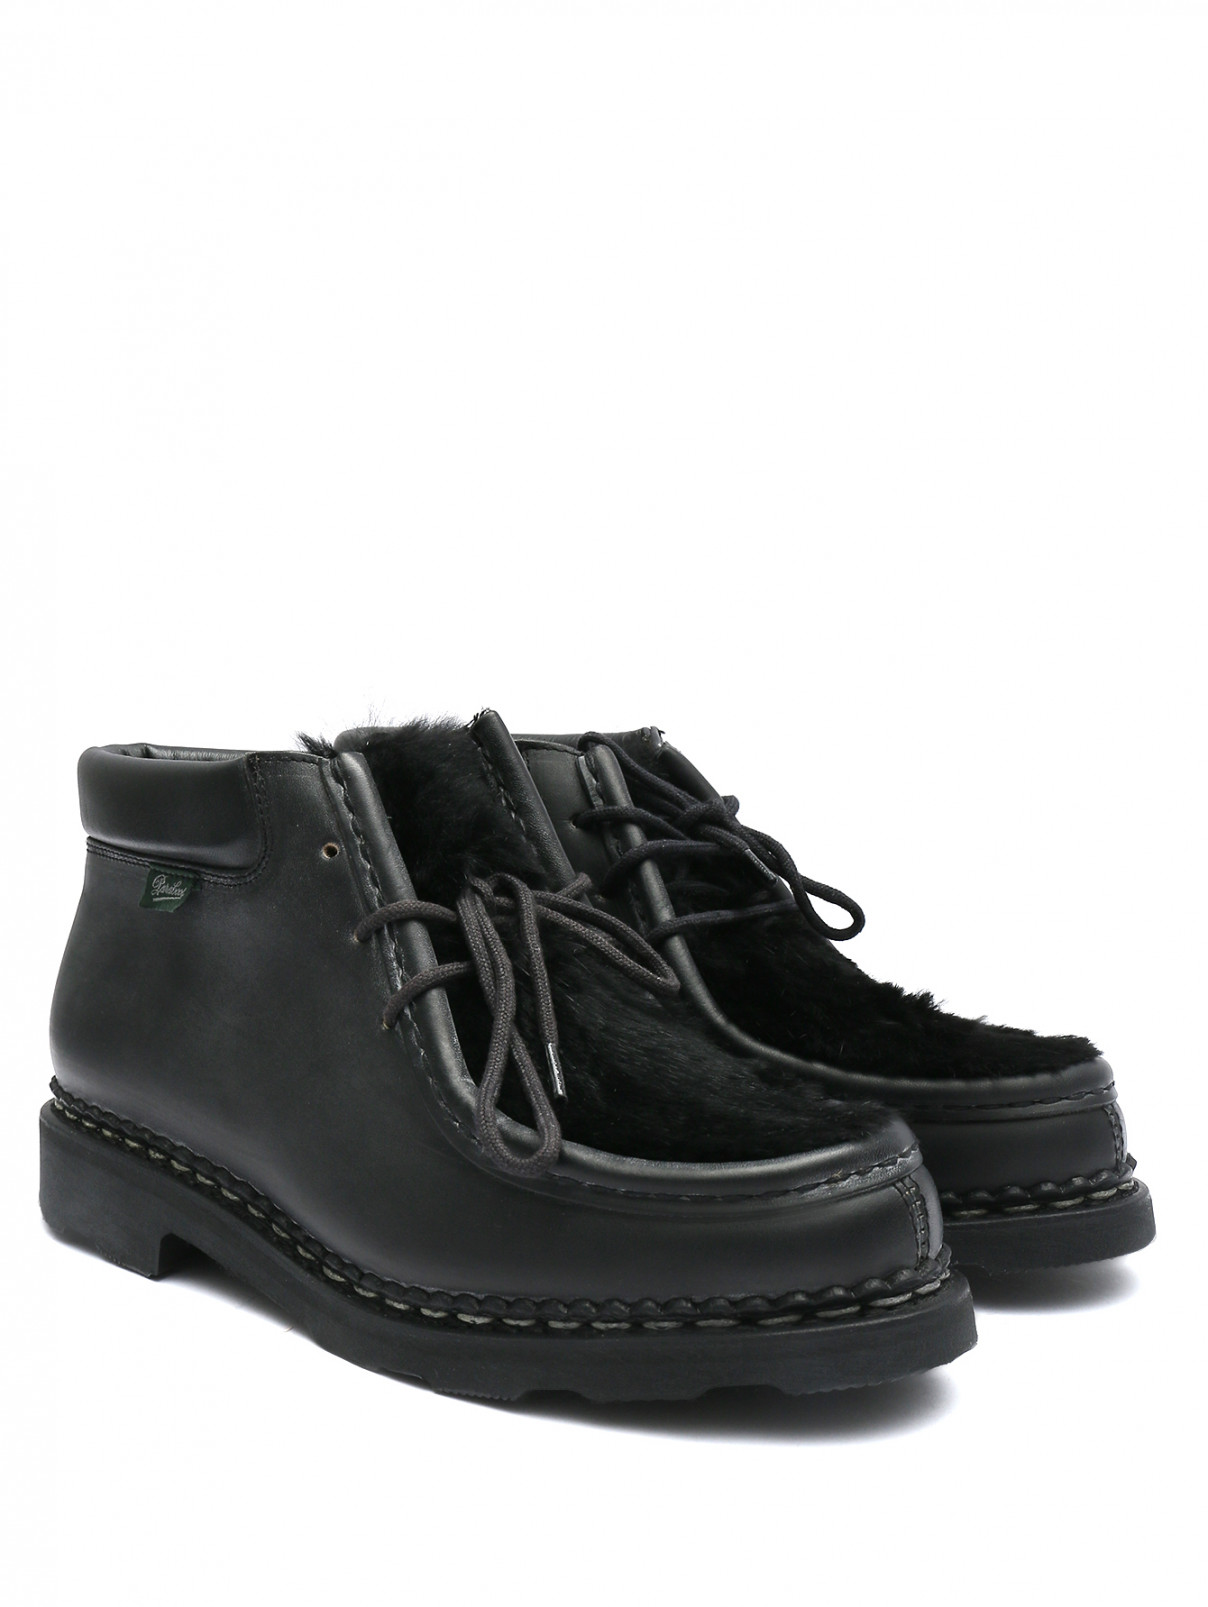 Комбинированные ботинки из кожи на шнурках Paraboot  –  Общий вид  – Цвет:  Черный